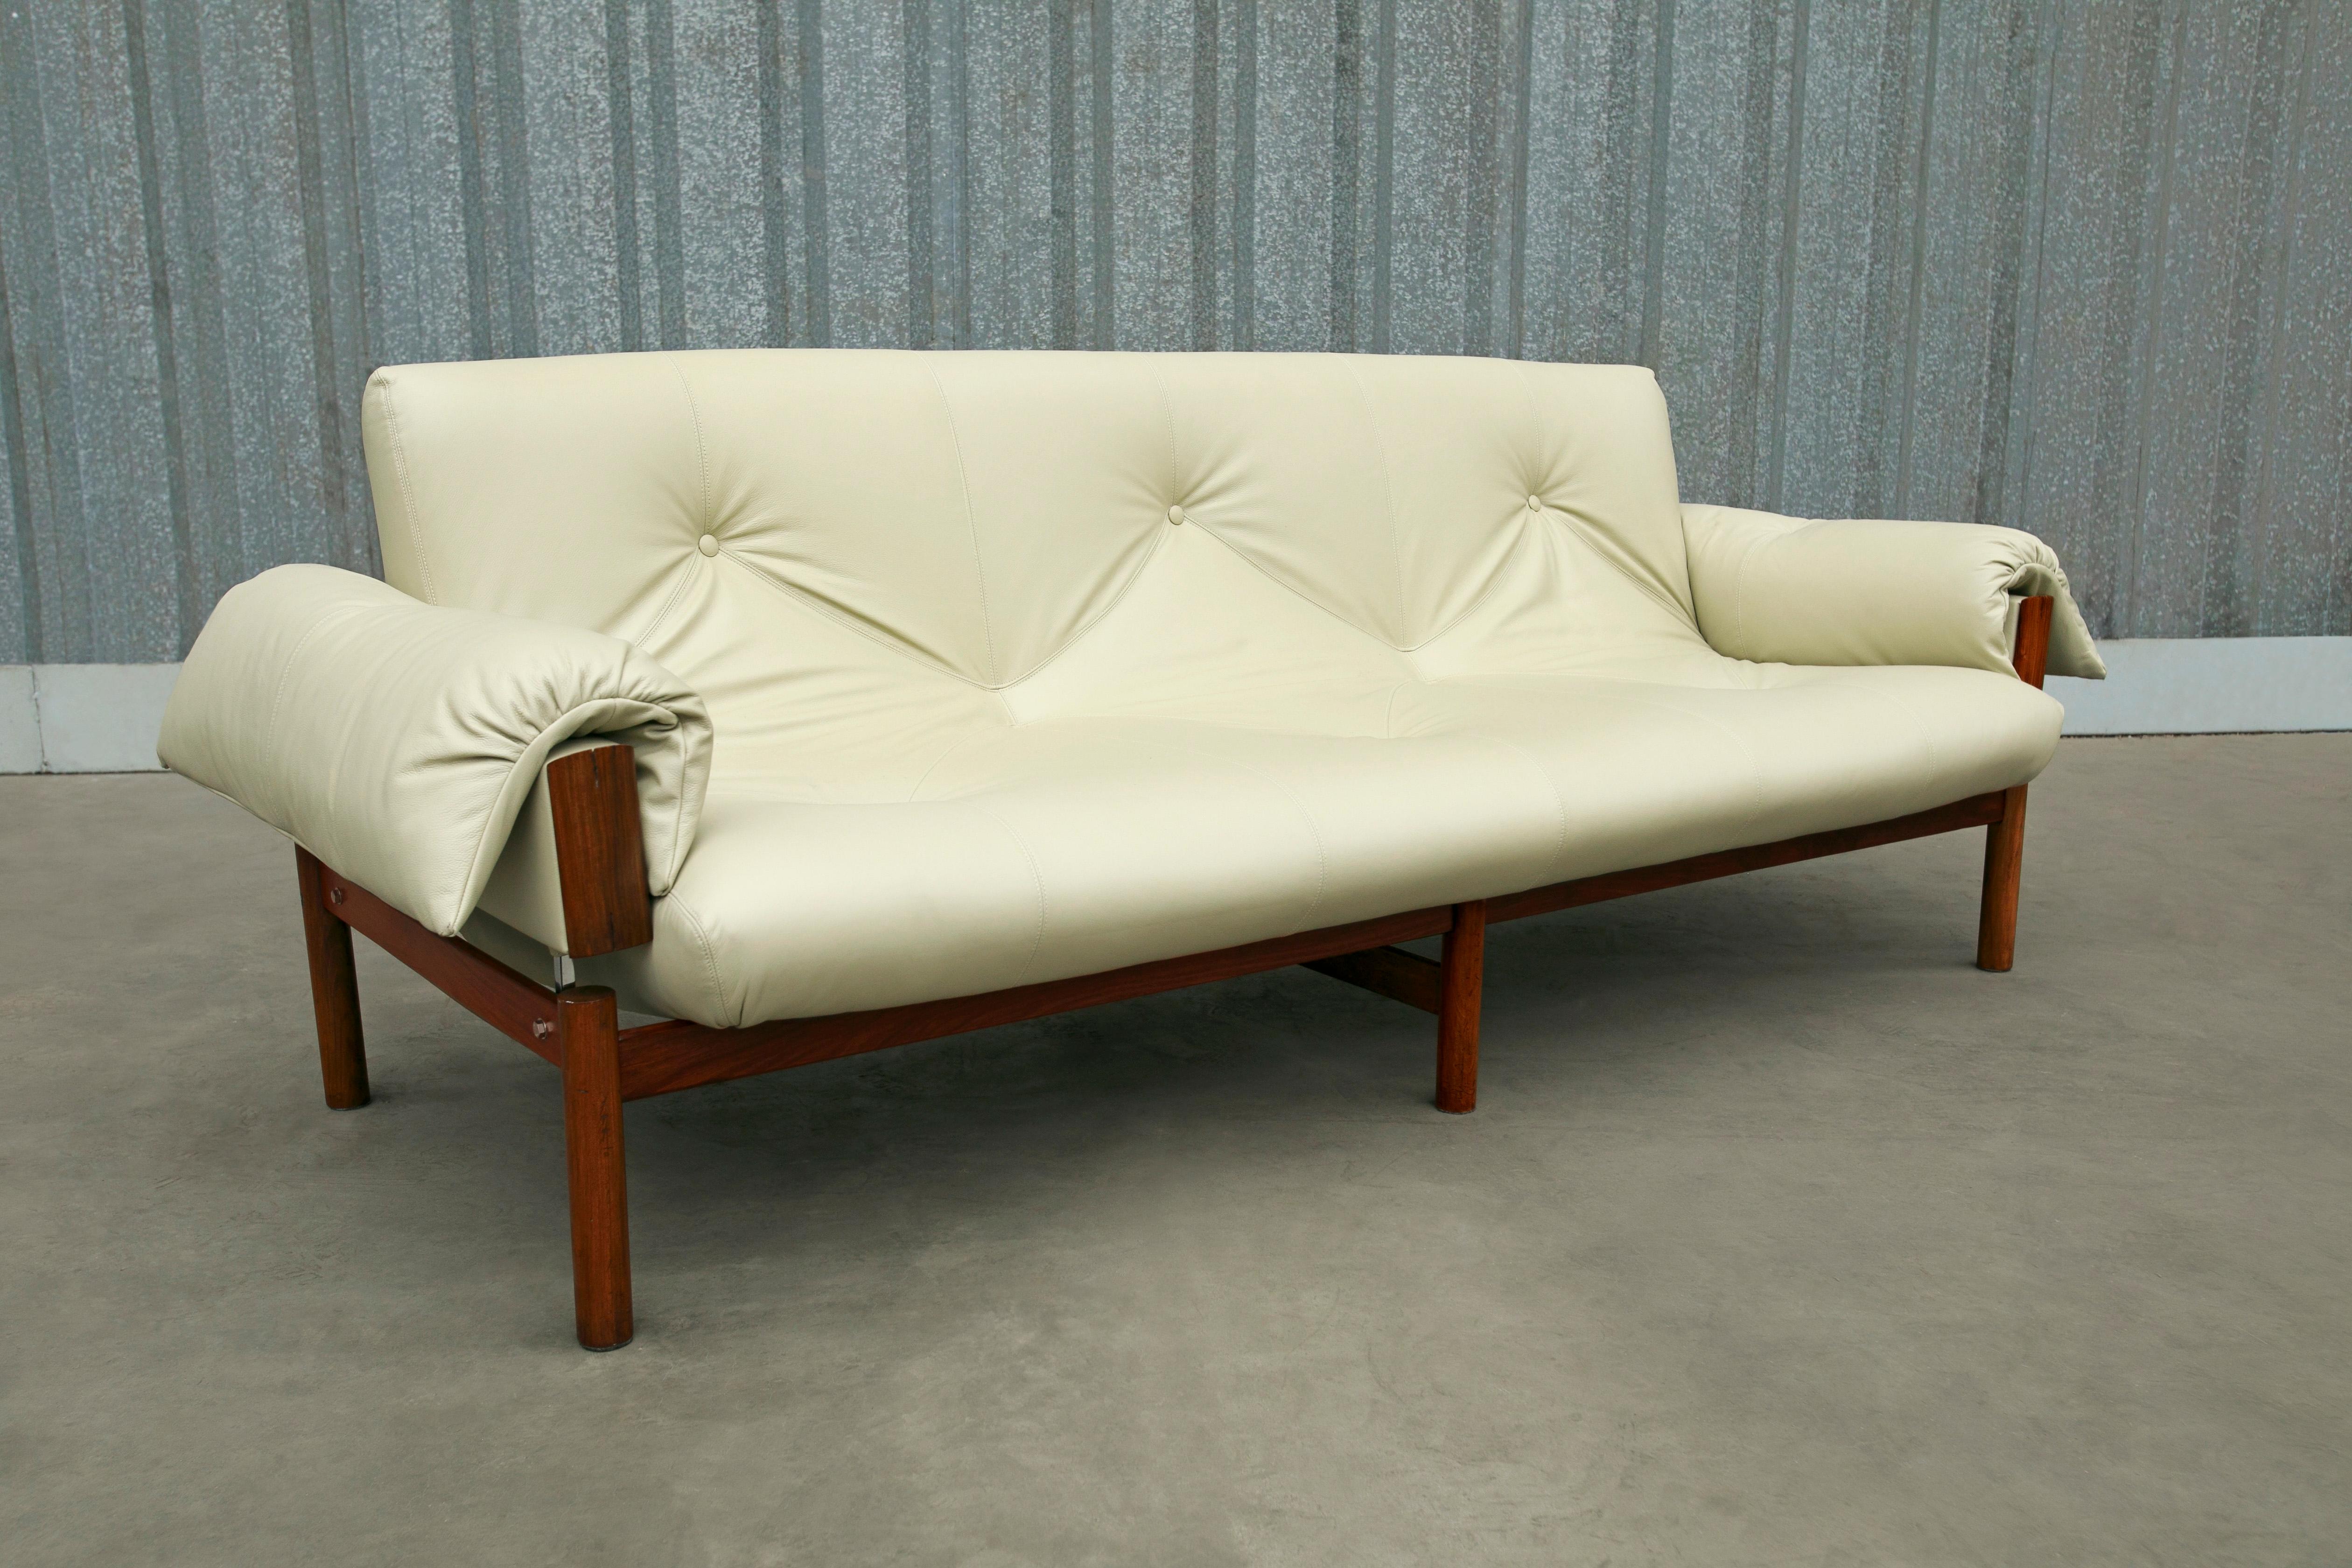 Disponible aujourd'hui, ce canapé moderne brésilien, modèle MP-13, conçu par Percival Lafer en bois dur et cuir italien beige, années 1960, n'est rien de moins que fabuleux ! 

Ce spectaculaire canapé peut accueillir confortablement trois personnes